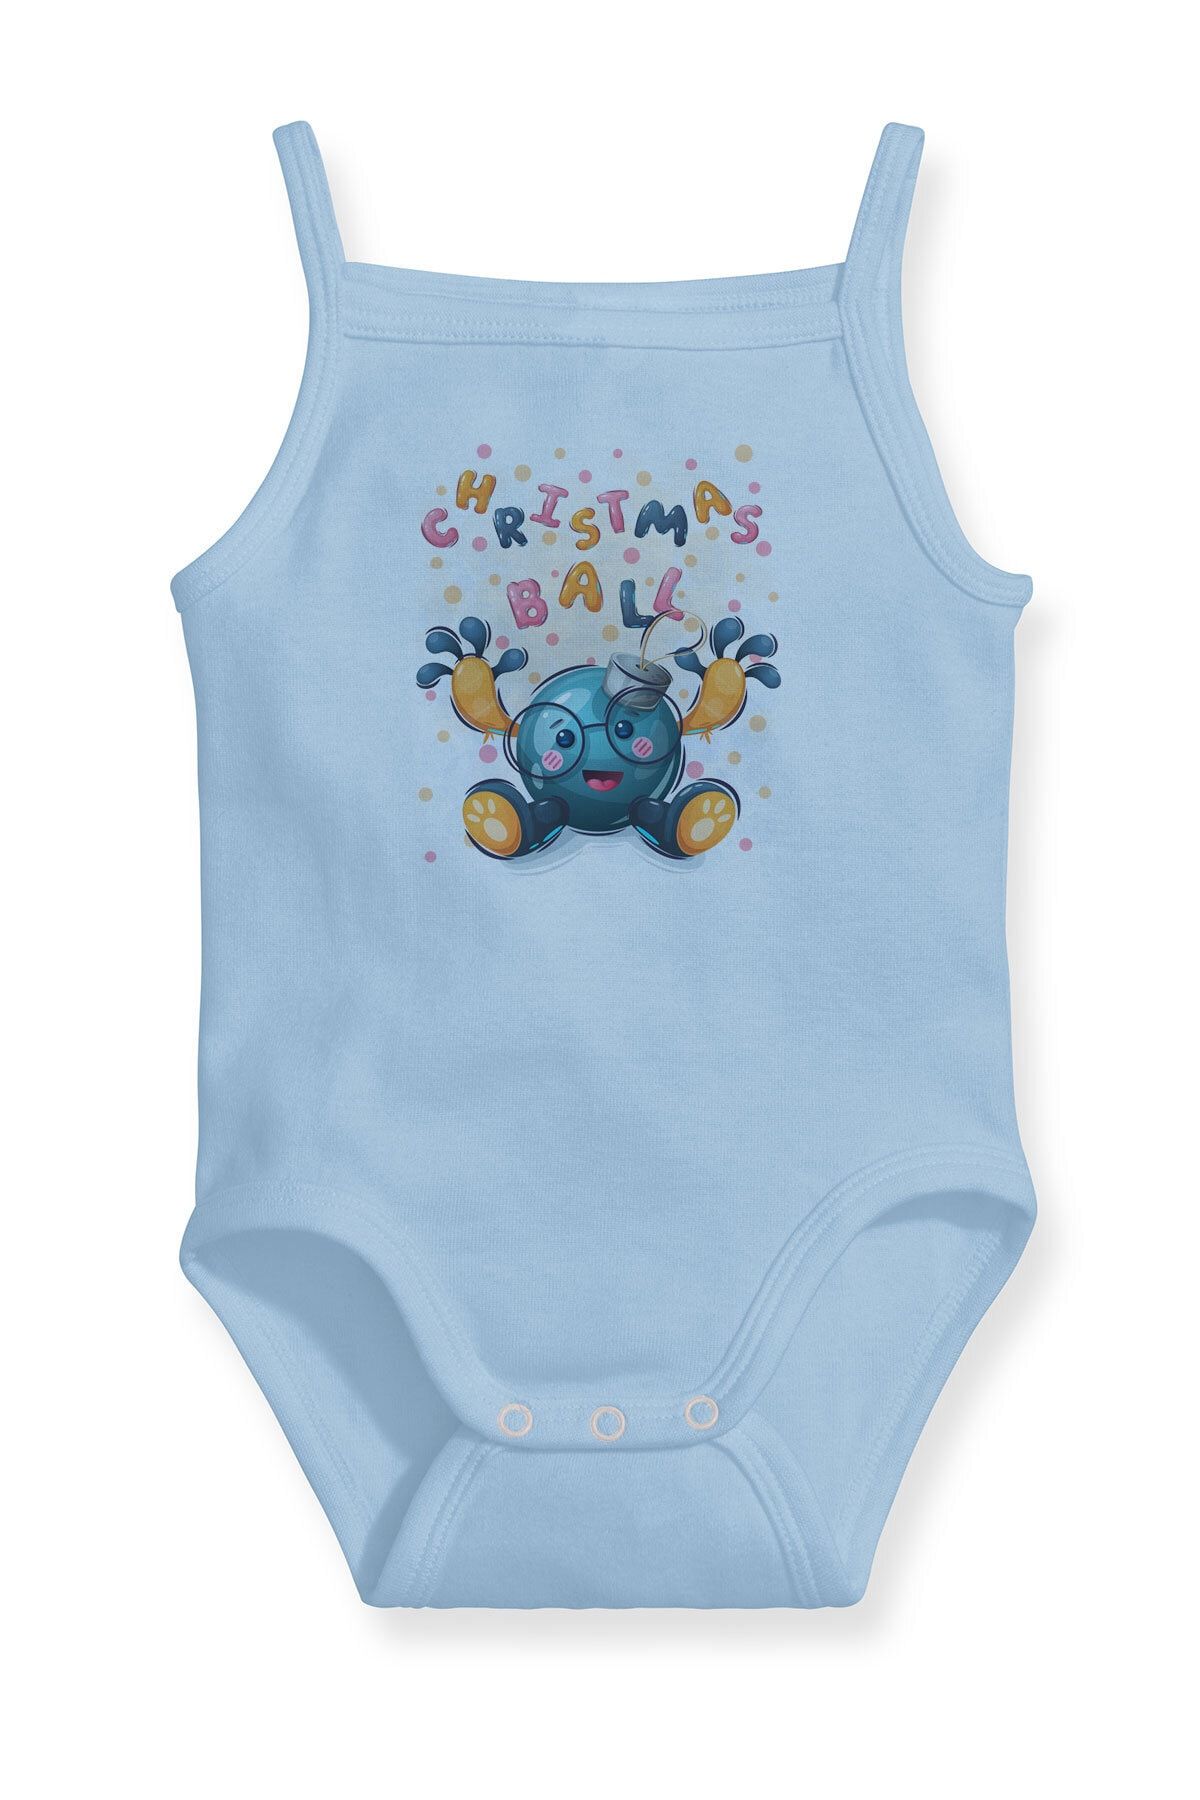 Angemiel Baby Yılbaşı Topu Erkek Bebek Askılı Zıbın Body Atlet Mavi